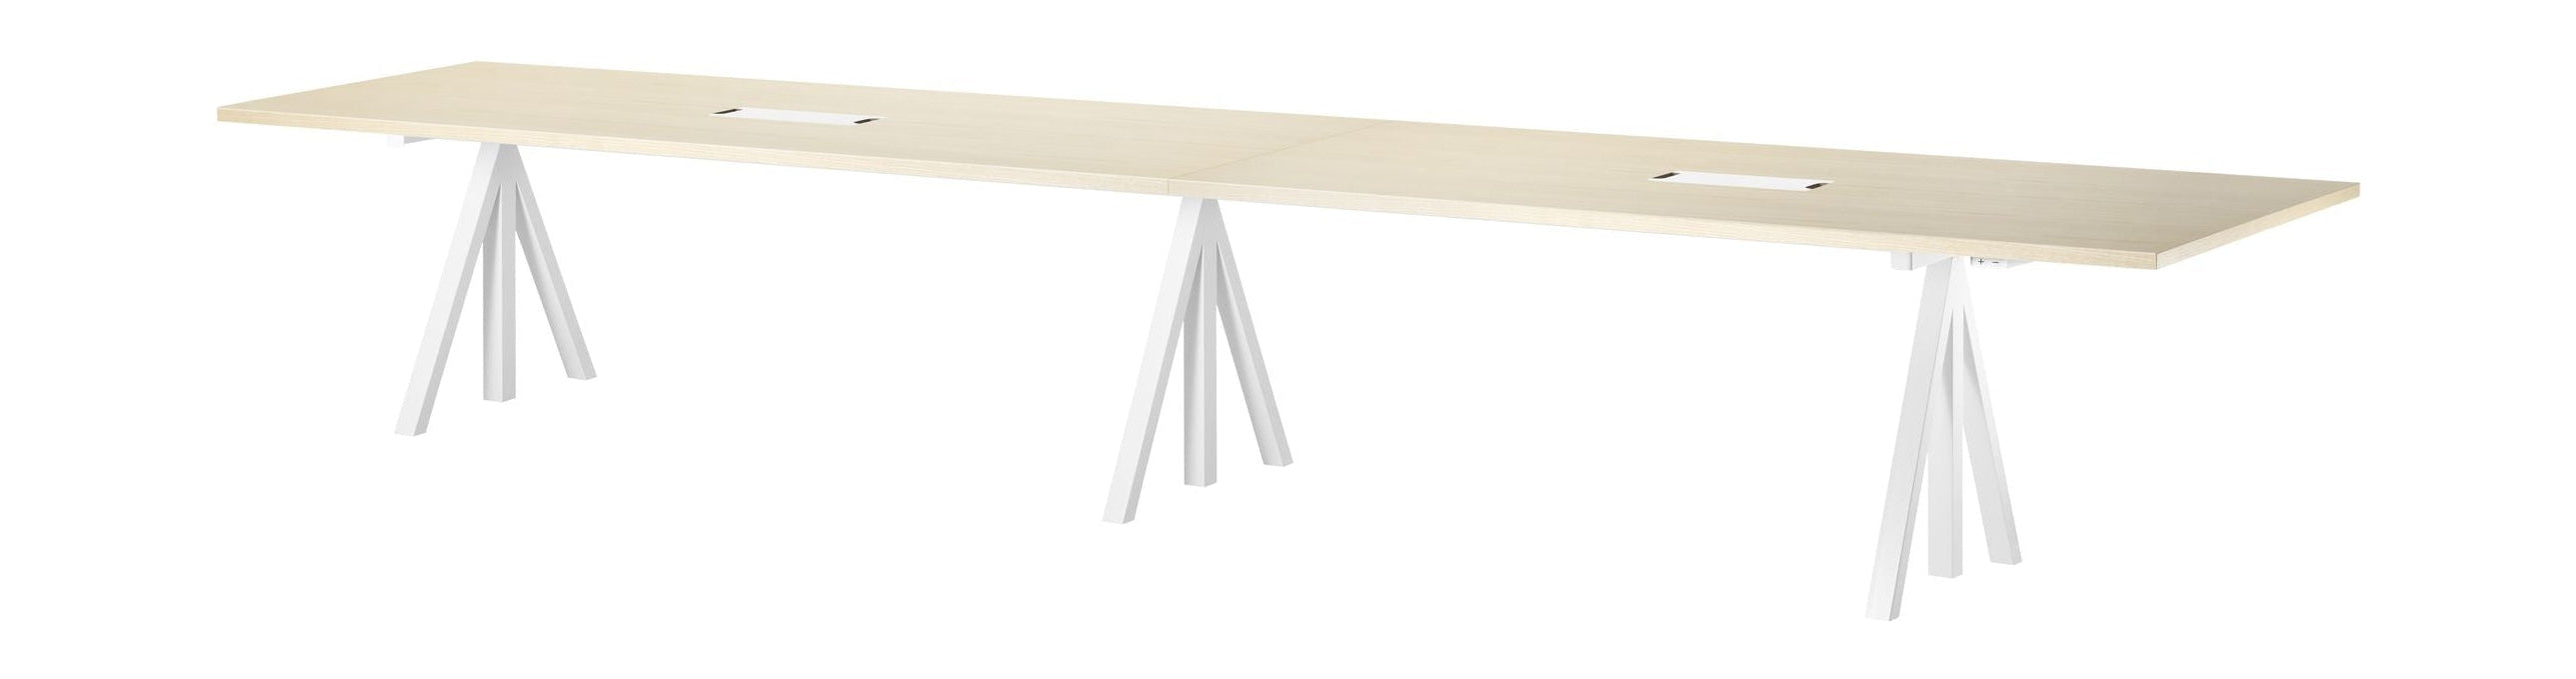 Ceniza de mesa de conferencia ajustable de altura de muebles de cuerda, 90x180 cm